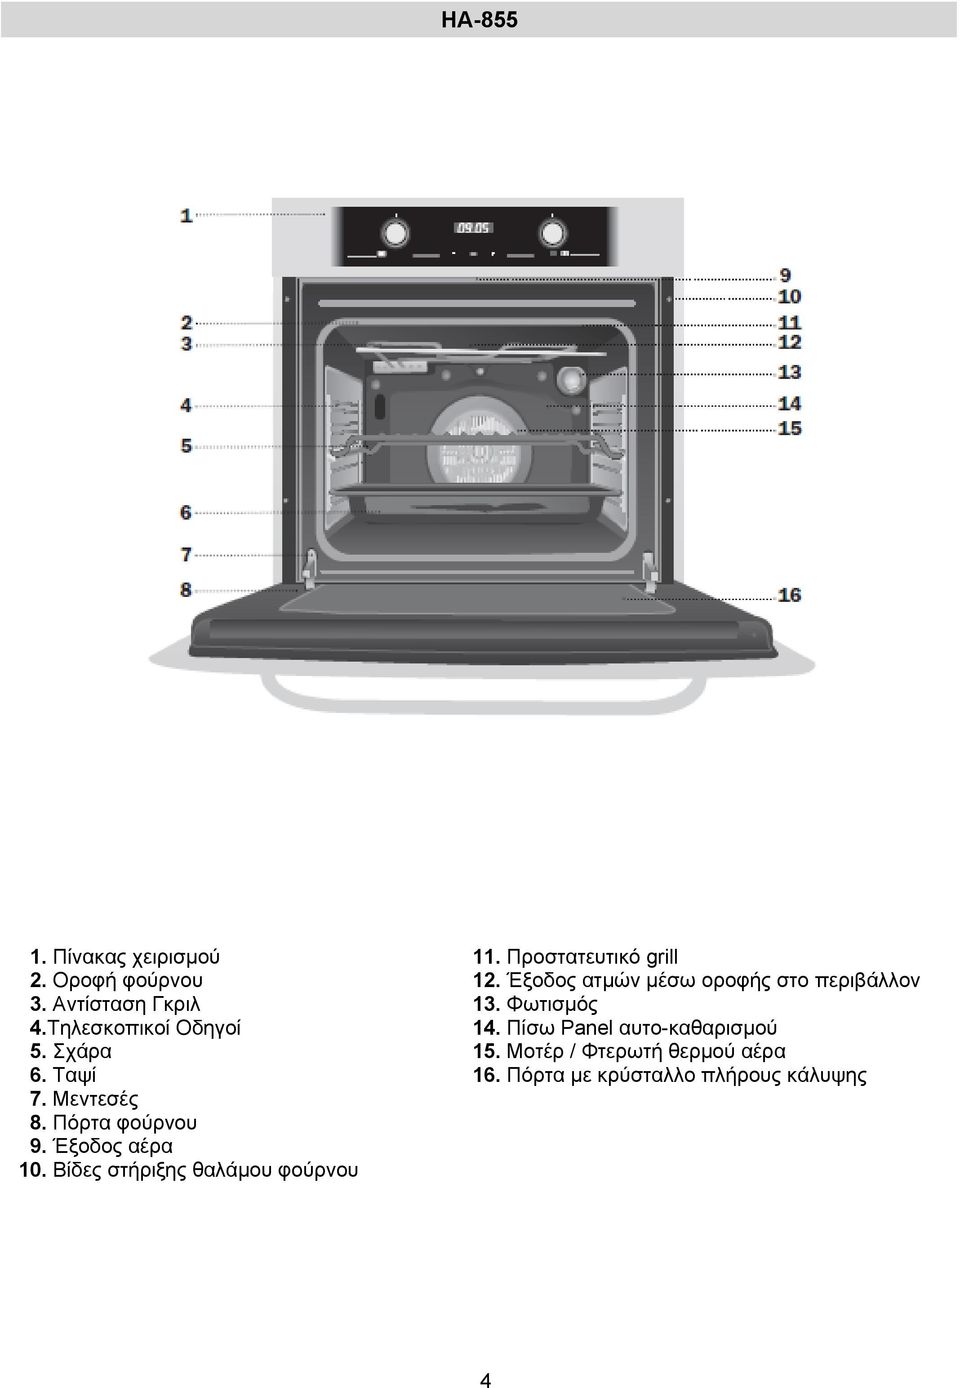 Προστατευτικό grill 12. Έξοδος ατμών μέσω οροφής στο περιβάλλον 13. Φωτισμός 14.